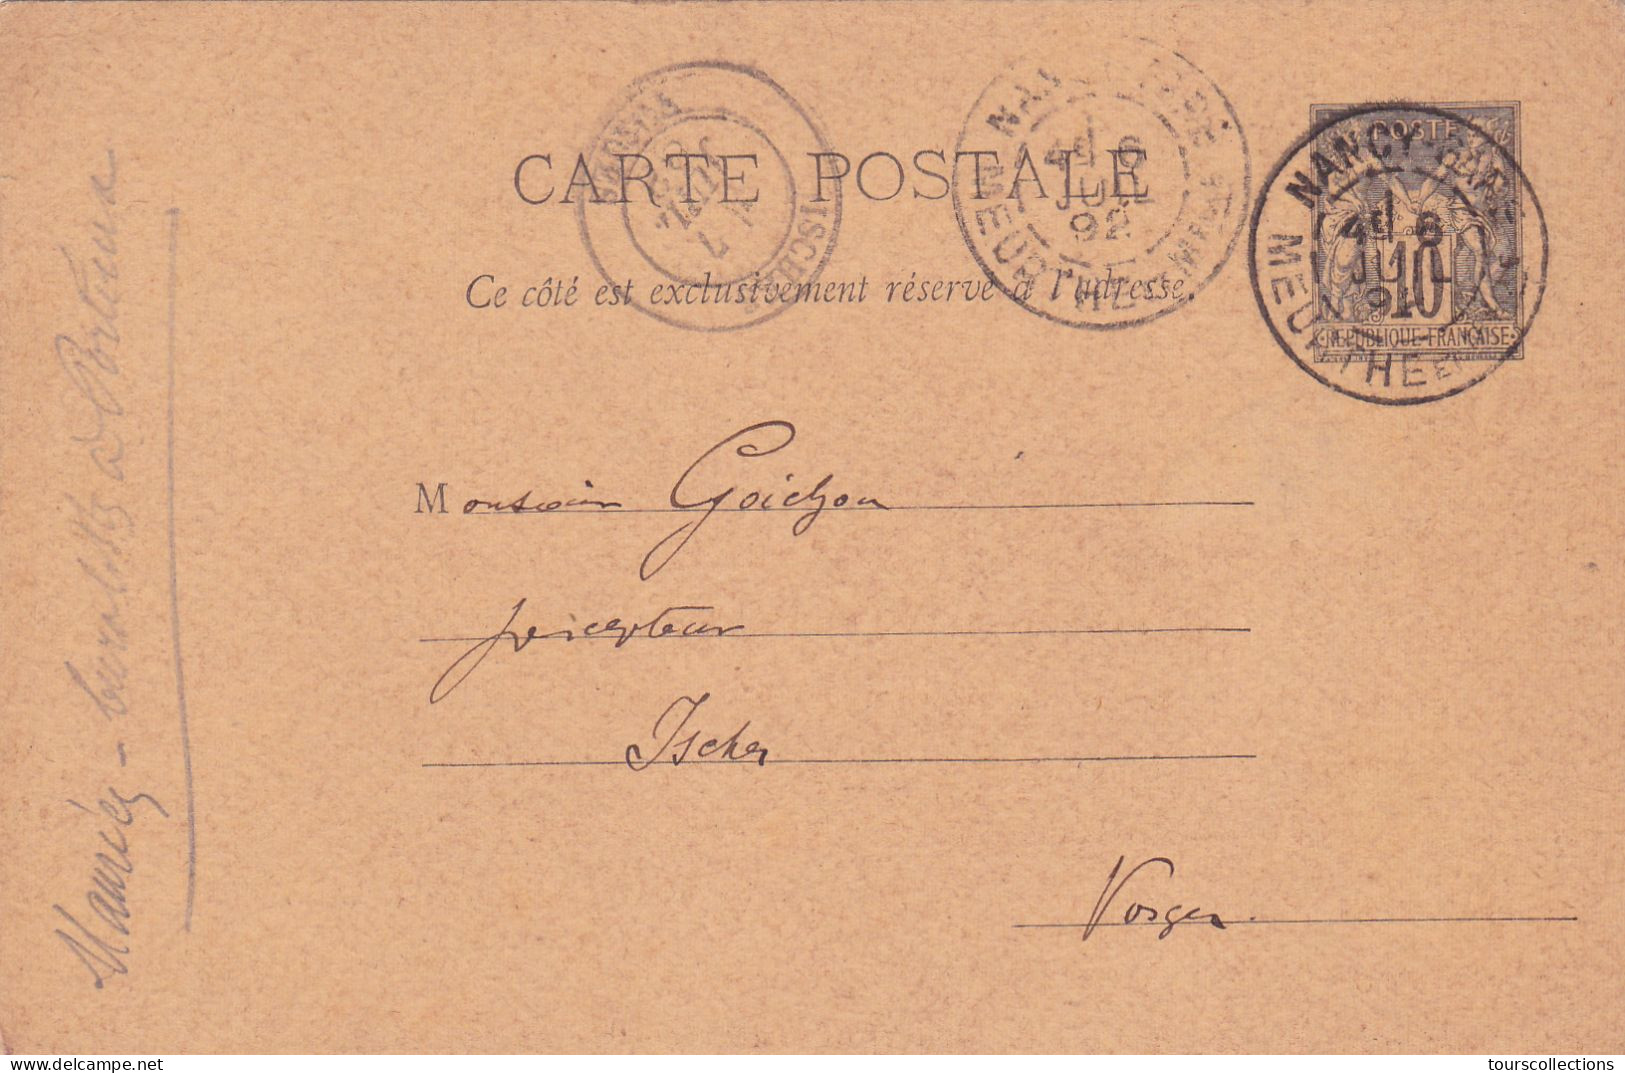 ENTIER POSTAL SAGE CARTE POSTALE De 1892 - Cachet NANCY Gare à ISCHES Vosges - Envoi.à Goichon Percepteur Impôts - Cartes Précurseurs